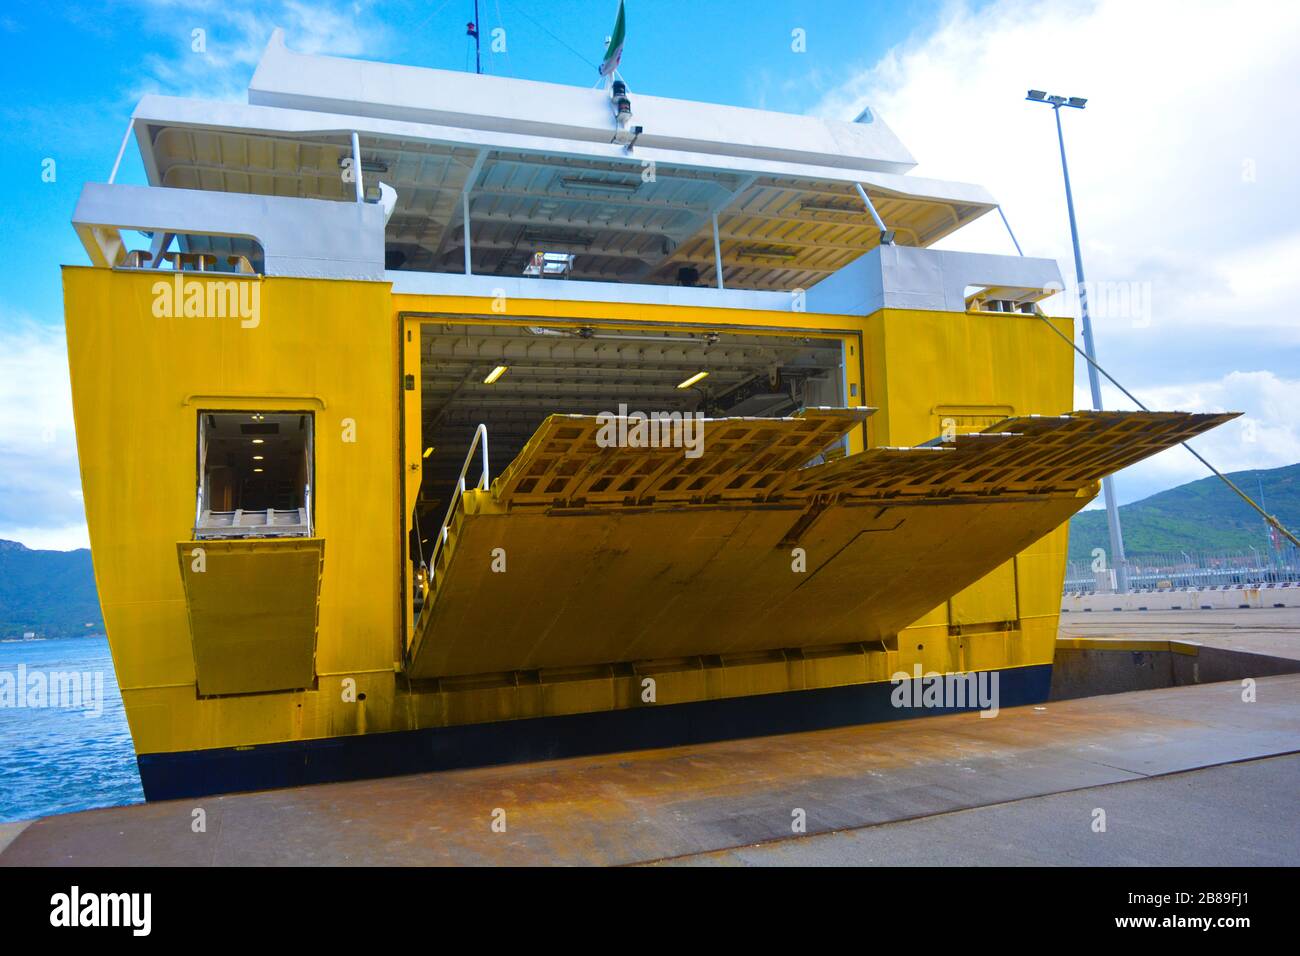 Das Heck einer großen gelben Fähre, die zum Hafen anfährt und sich auf die Ausschiffung vorbereitet. Die Auffahrt geht am Kai des Hafens hinunter. Ruhiger Tag Stockfoto